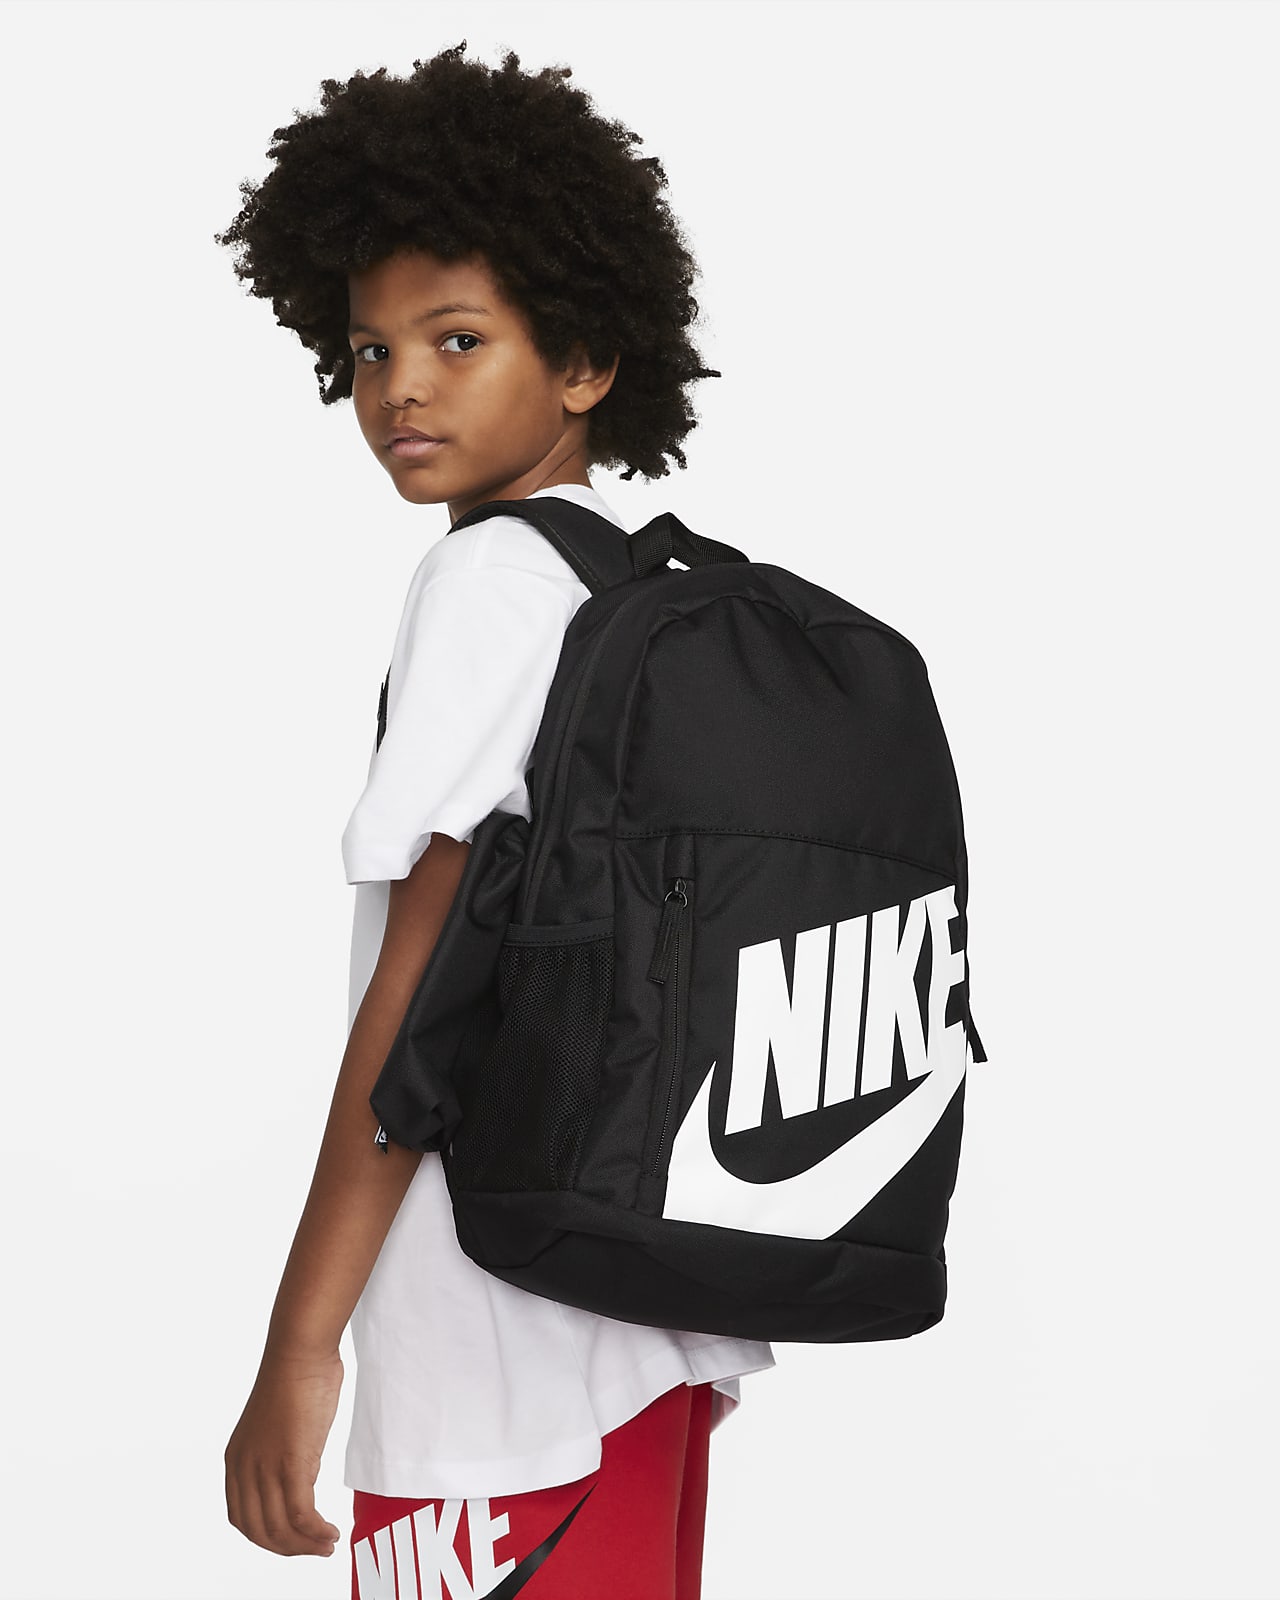 Mochila Nike para criança (20 L)